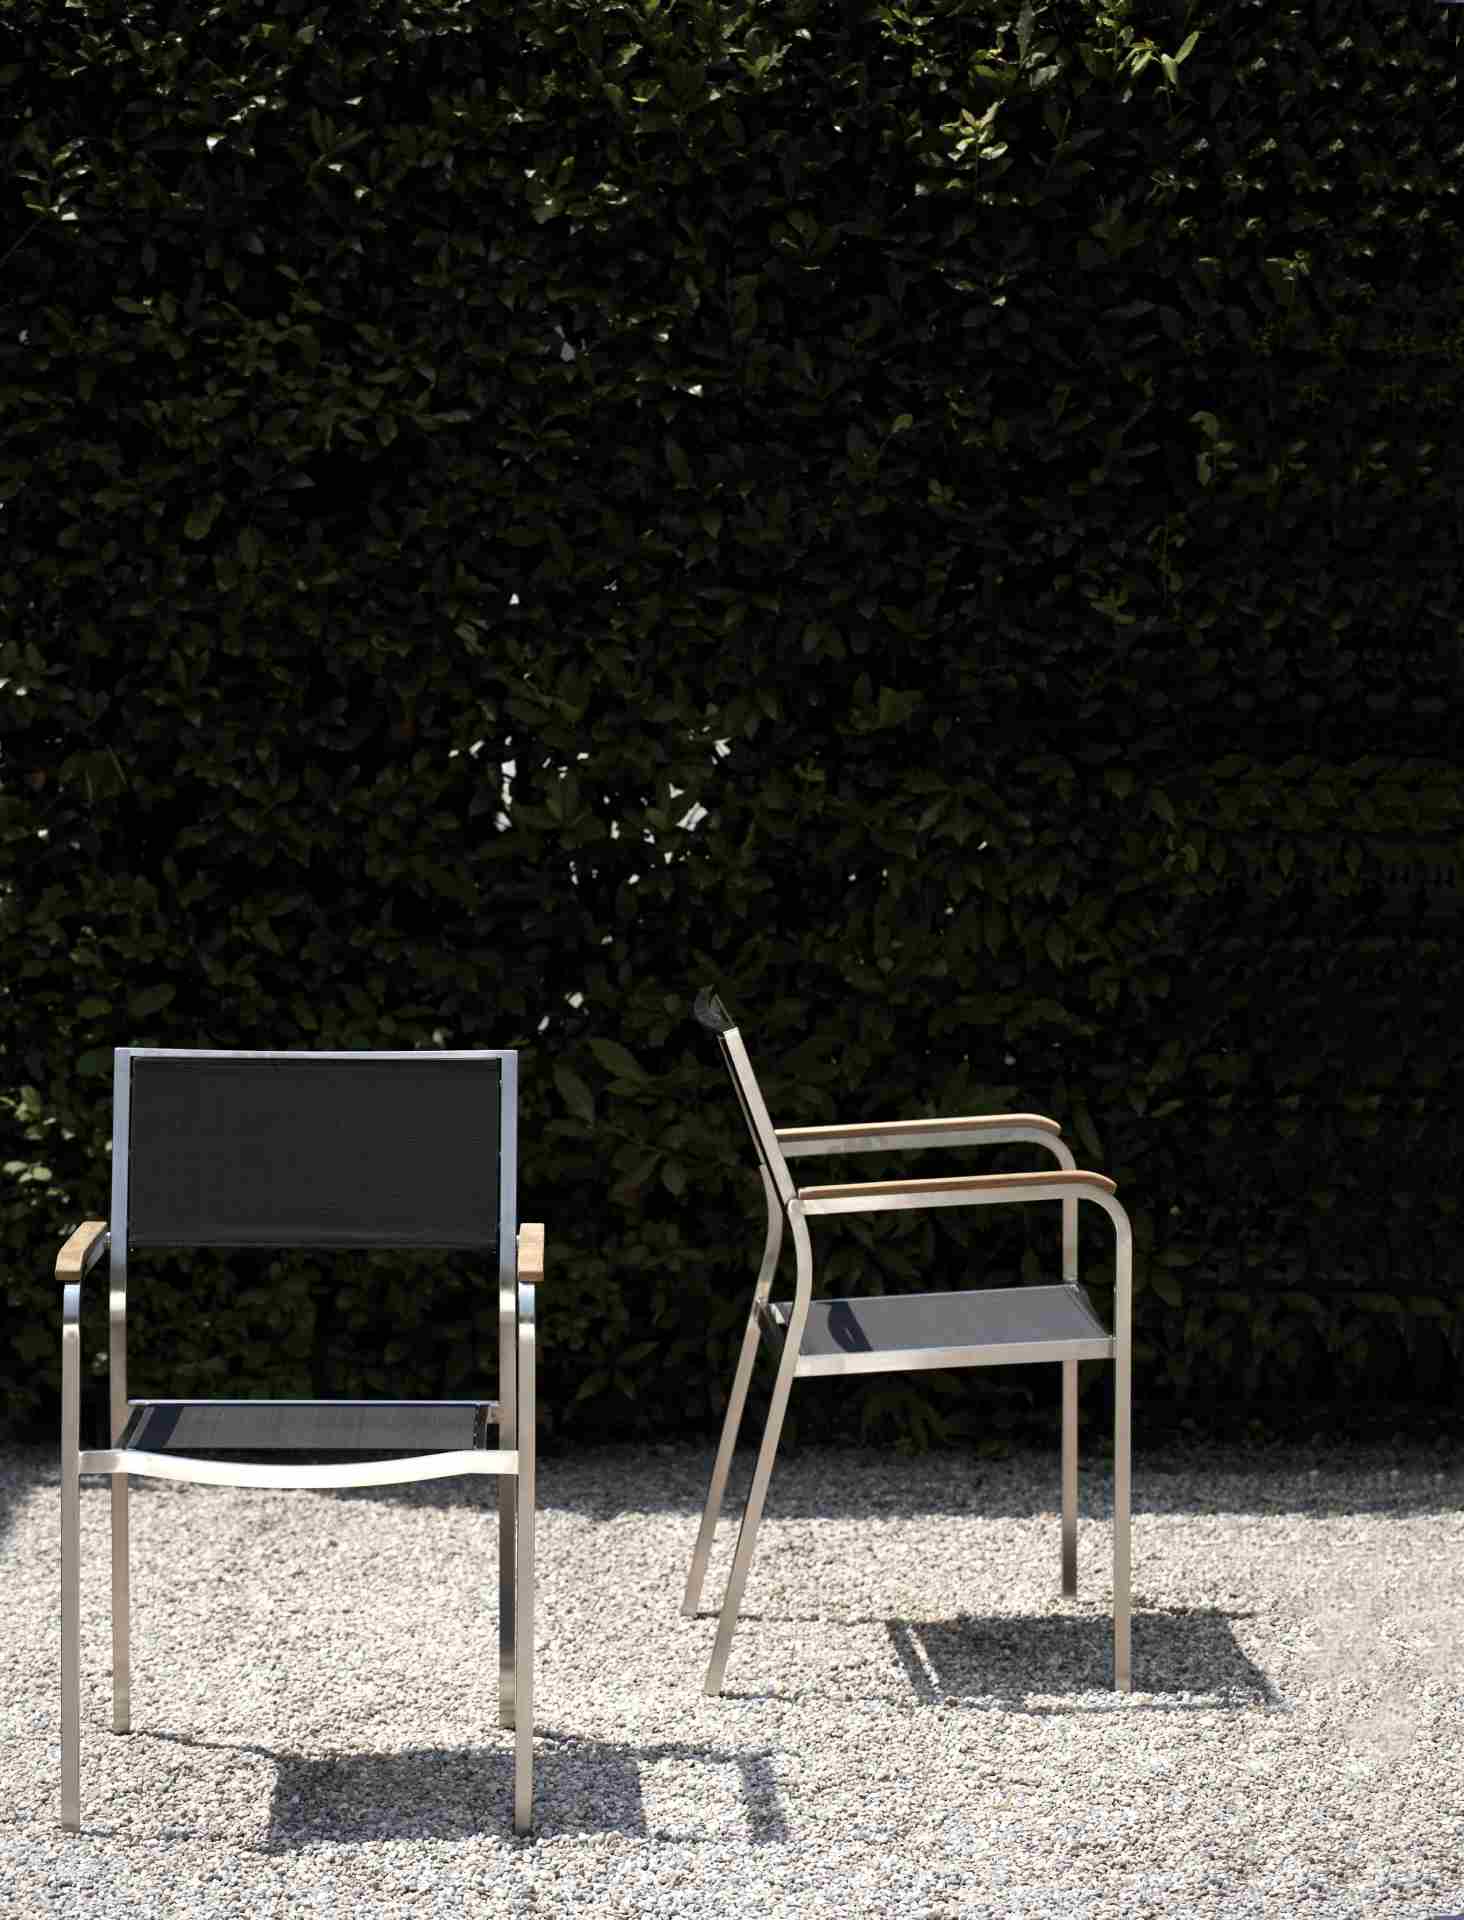 Der Stilvolle und moderne Gartensessel Lux wurde von der Marke Jan Kurtz hergestellt. Die Materialien des Sessels sind Edelstahl und Kunststoff, somit ist der Sessel auch für den Garten-Bereich geeigent. Die Farbe ist Schwarz.